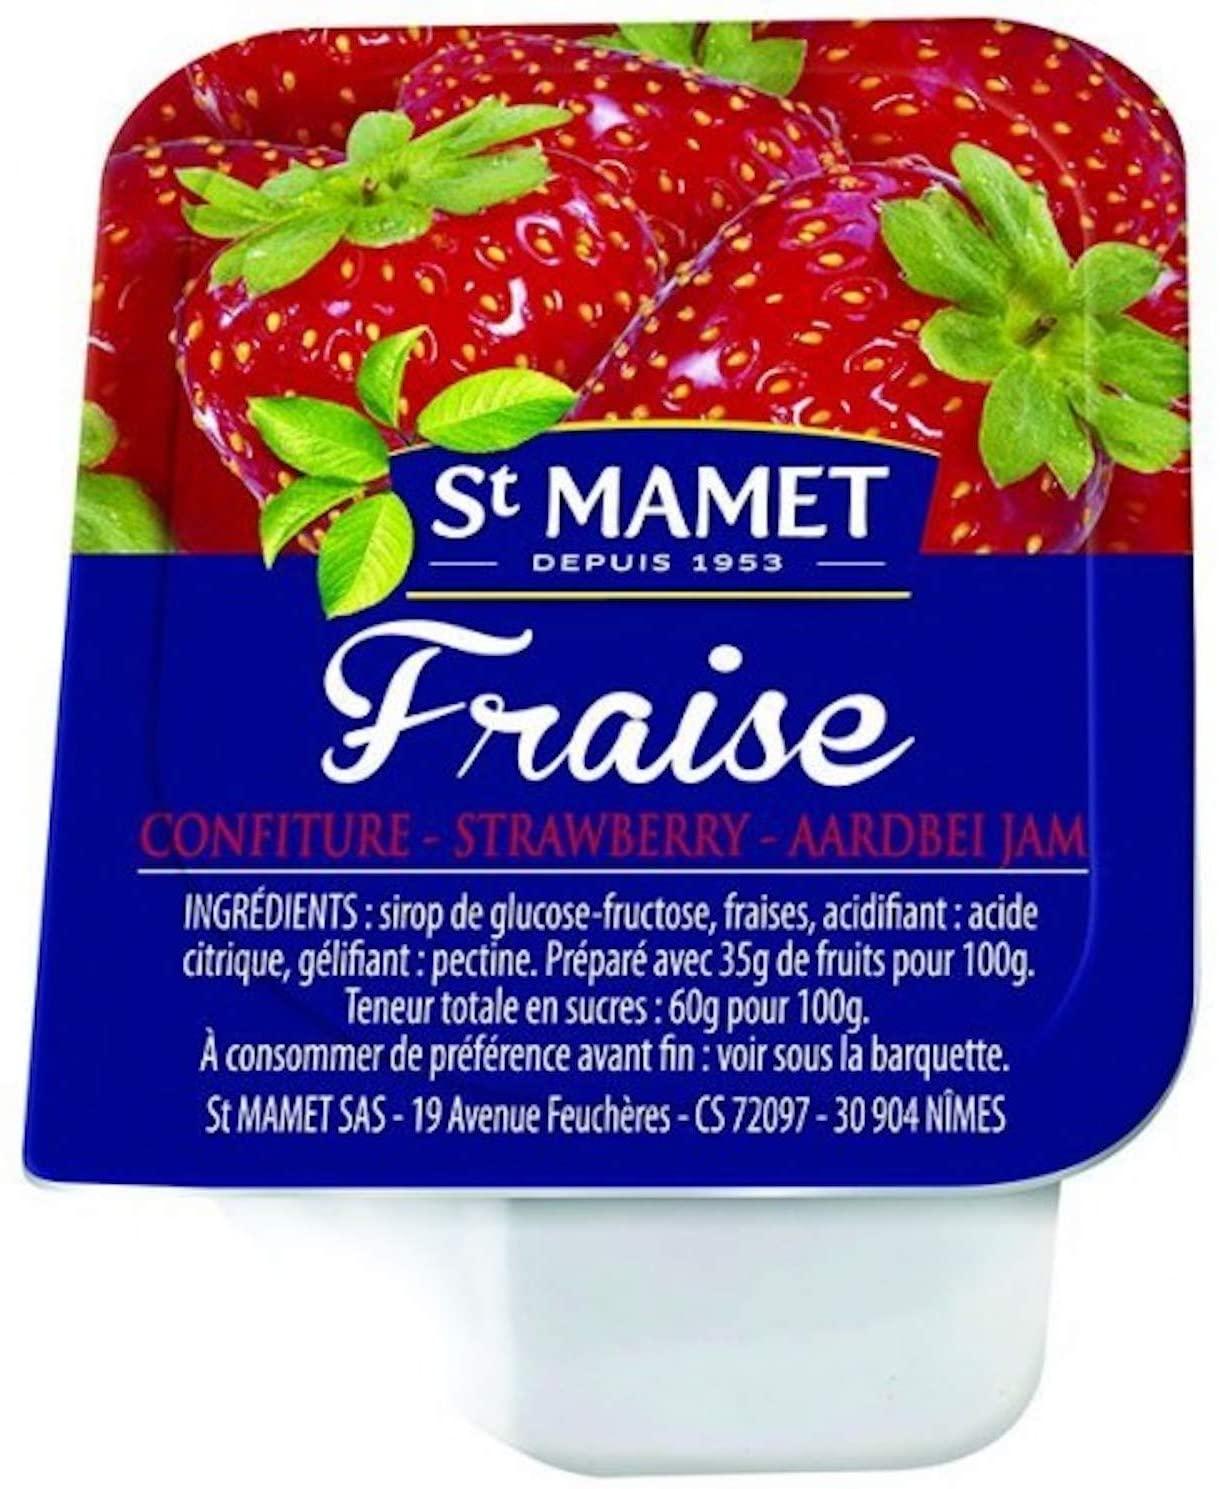 Confiture de fraise - Confitures, miels et compotes - Epicerie sucrée - Les